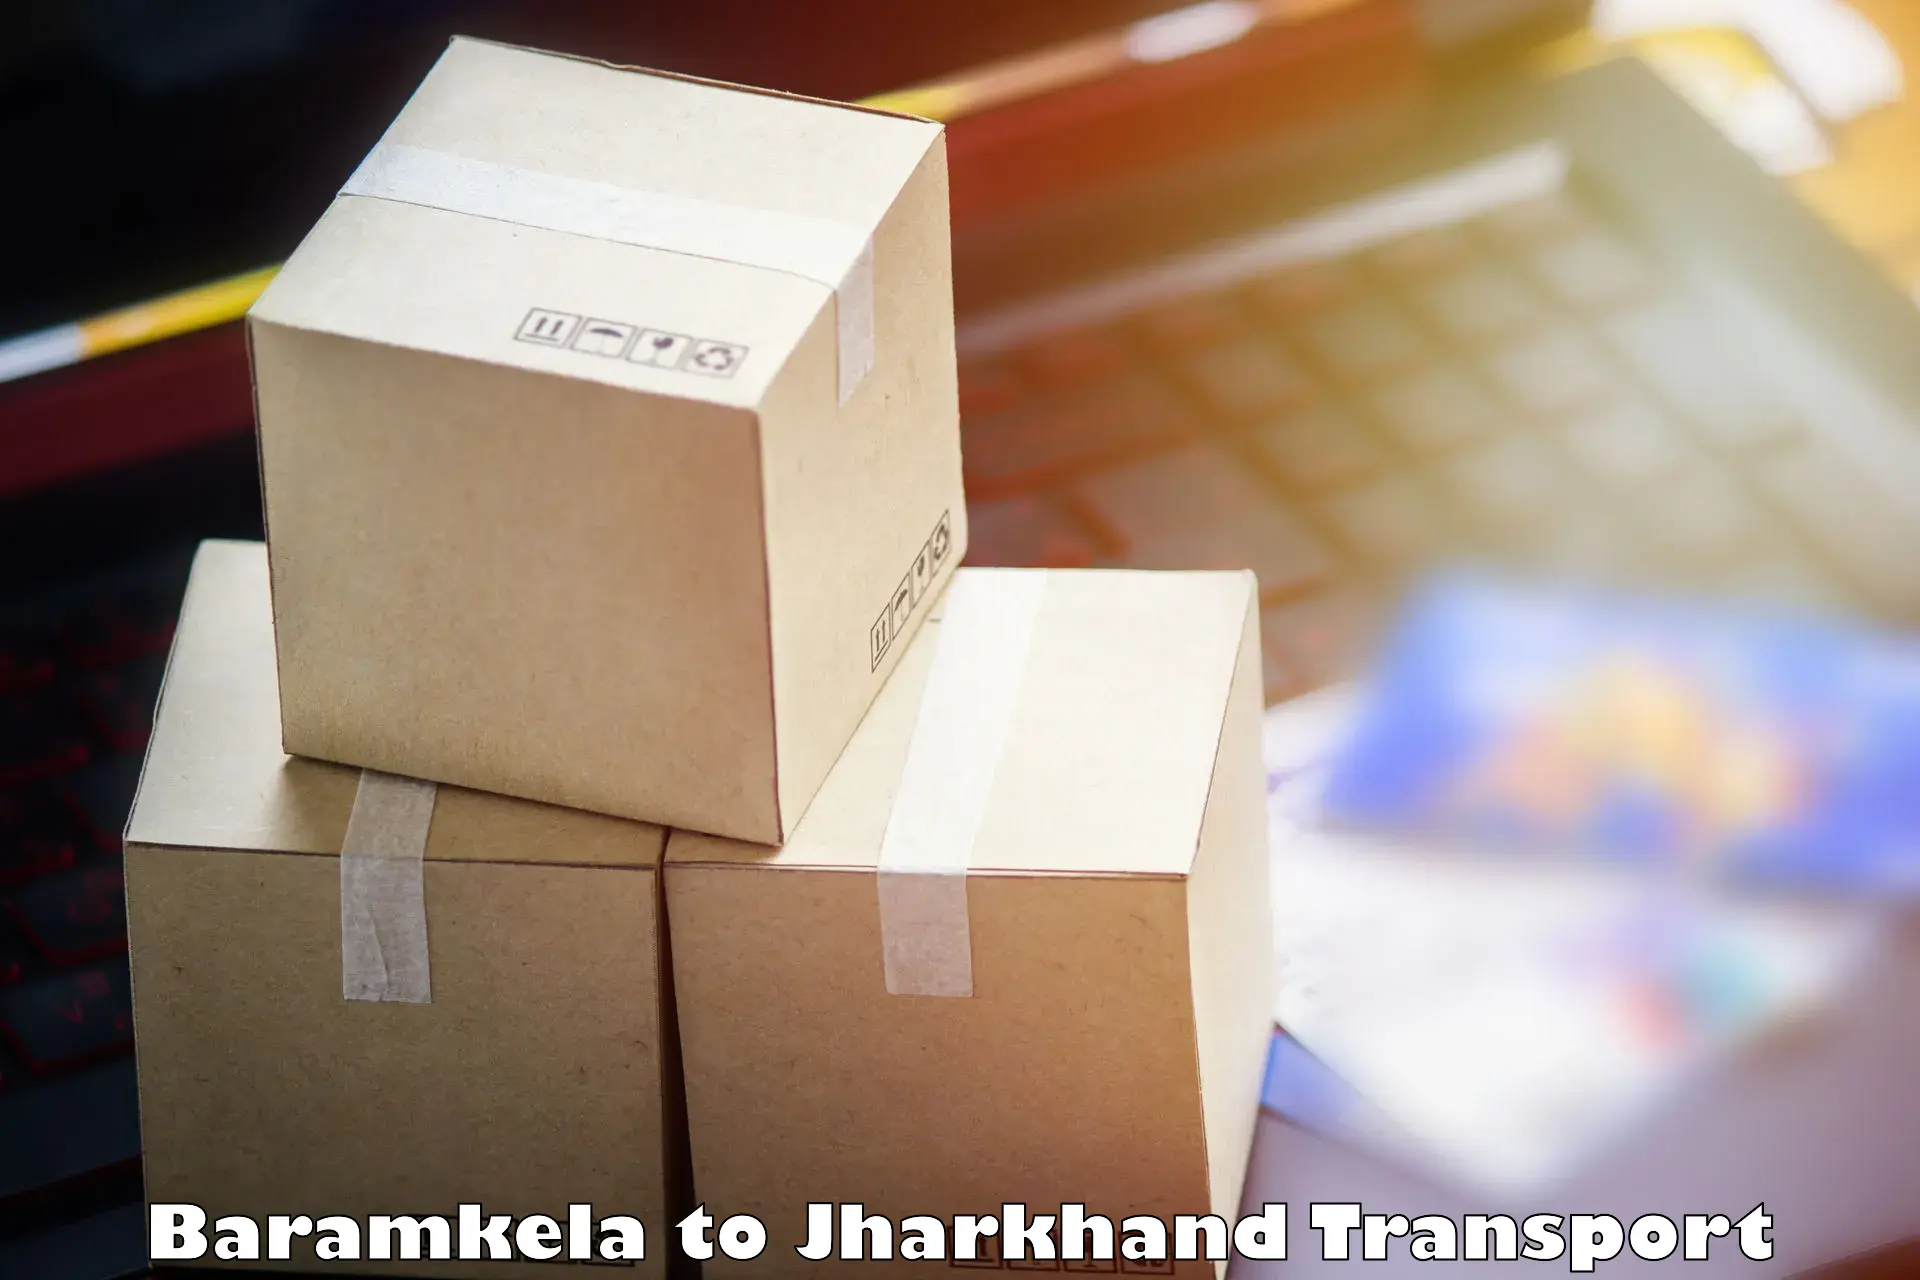 Luggage transport services Baramkela to Kedla